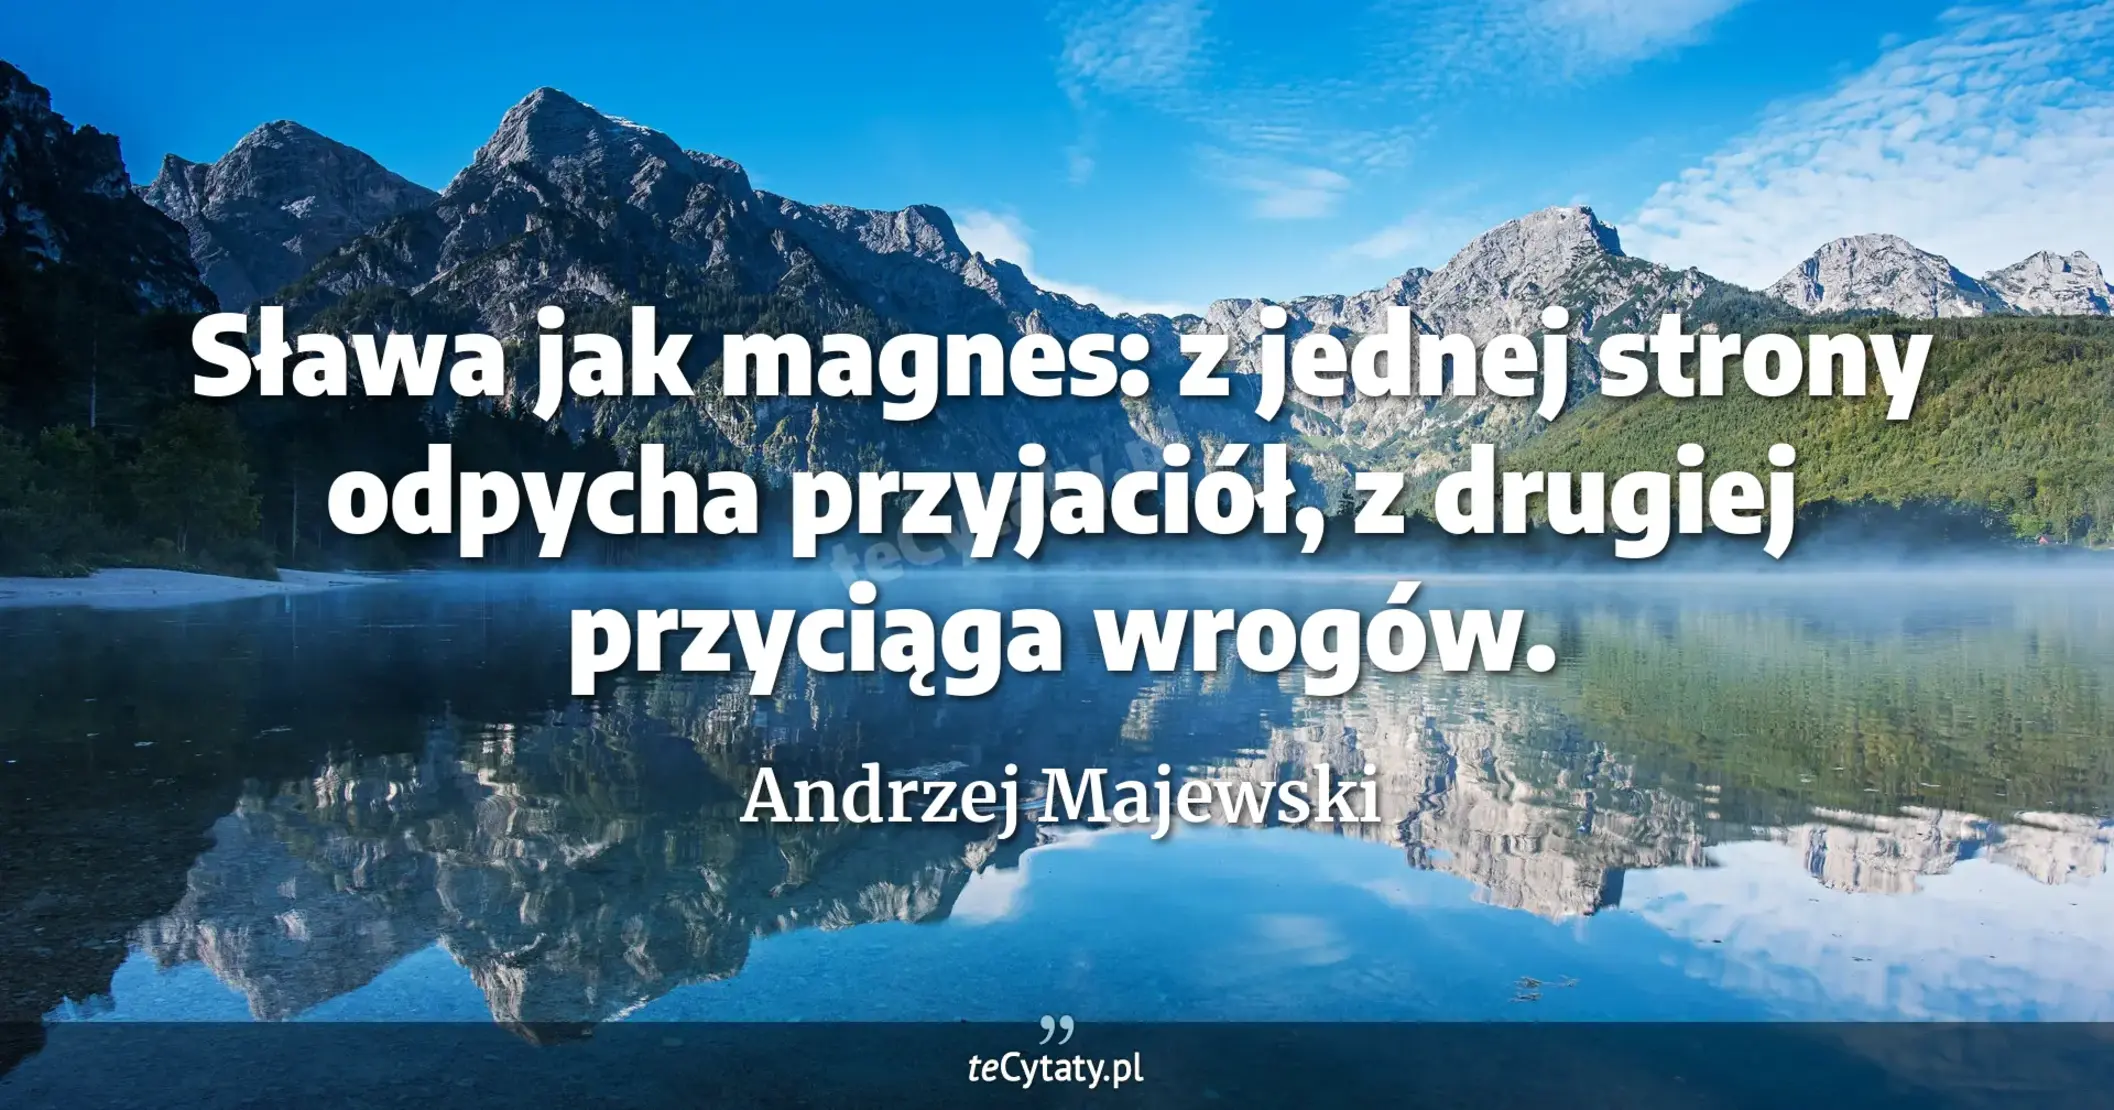 Sława jak magnes: z jednej strony odpycha przyjaciół, z drugiej przyciąga wrogów. - Andrzej Majewski